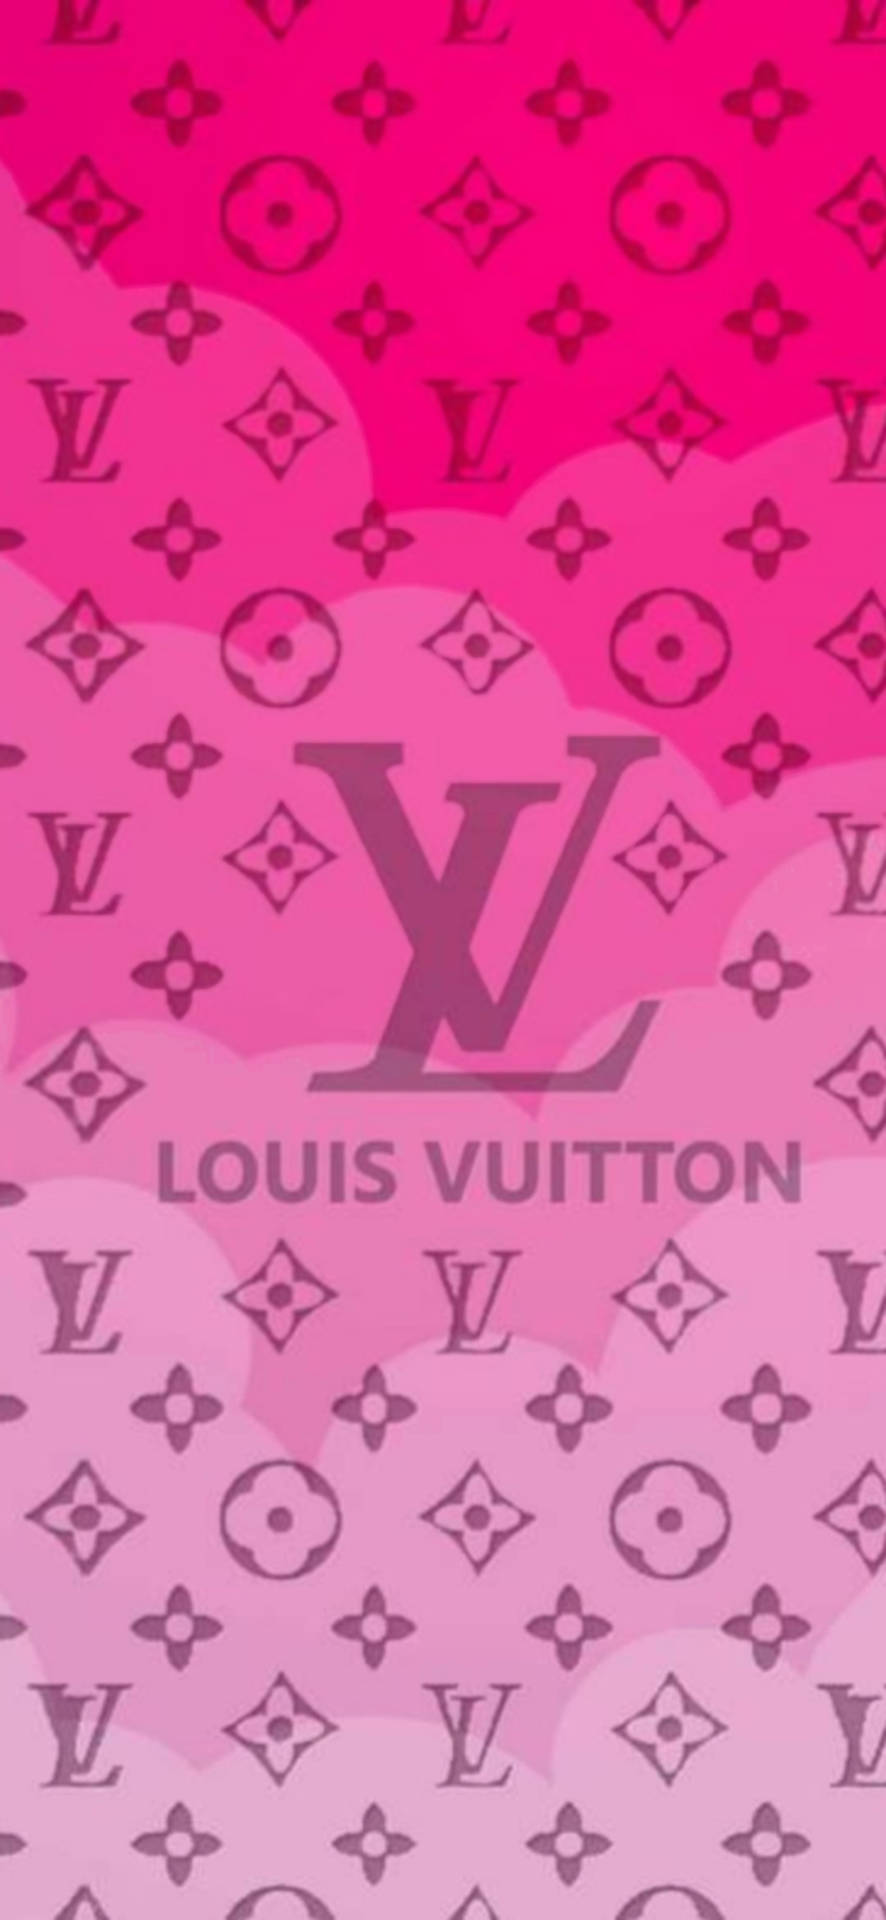 Telefone Louis Vuitton Em Tons De Rosa Papel de Parede